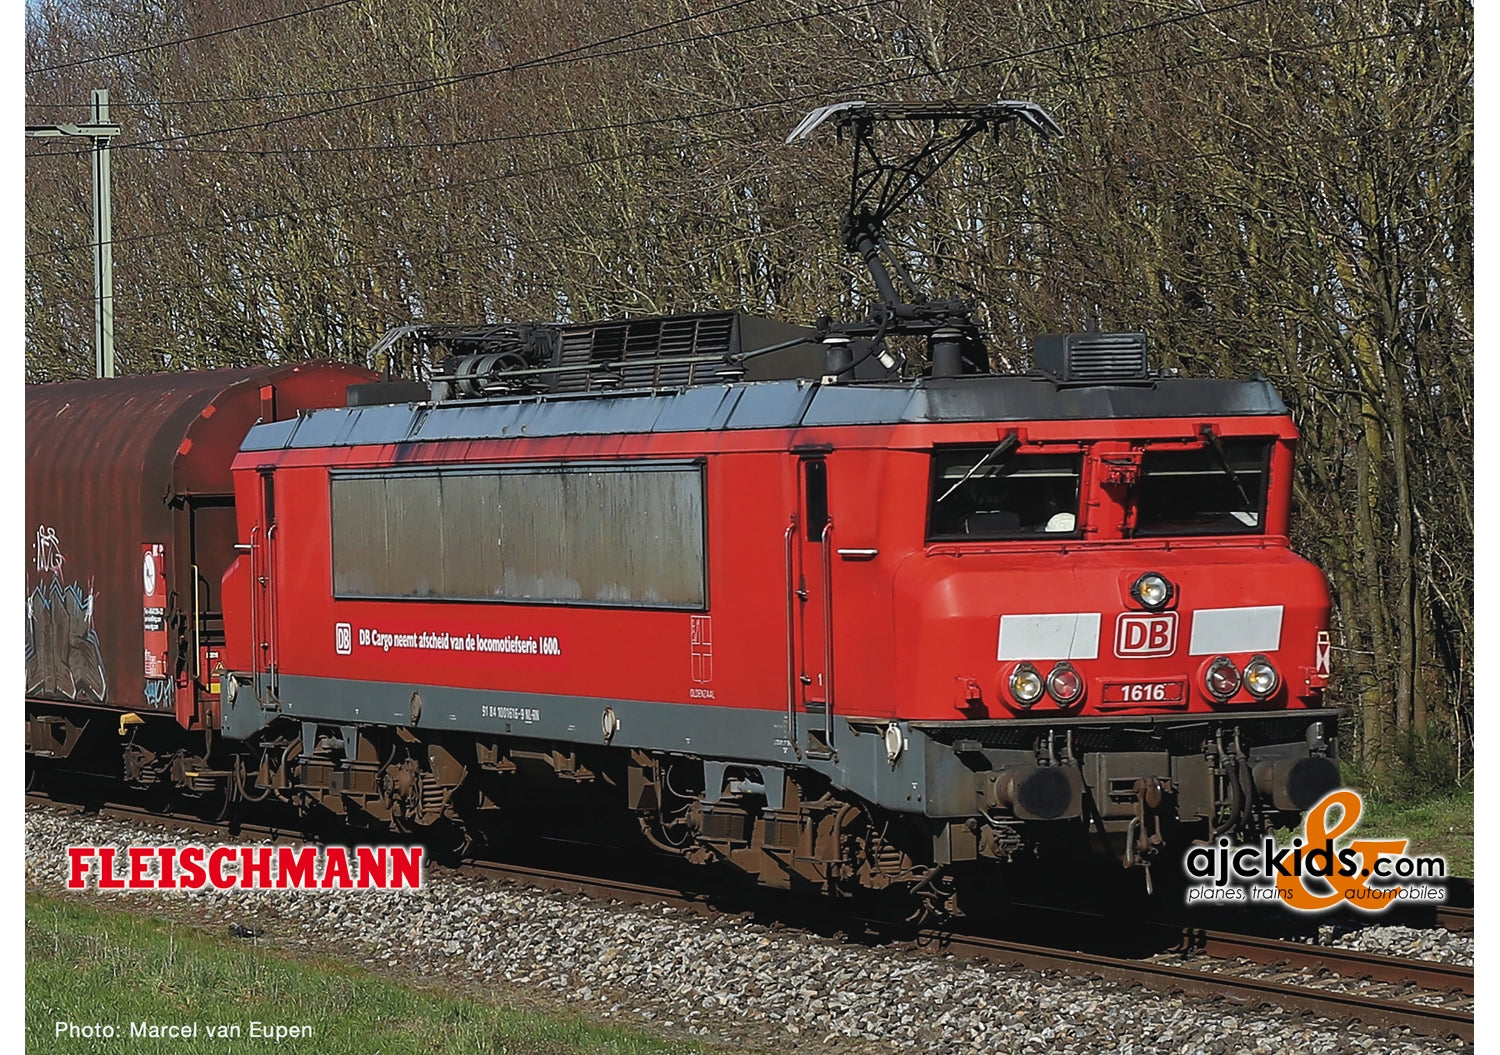 Fleischmann 732101 - Electric locomotive 1616